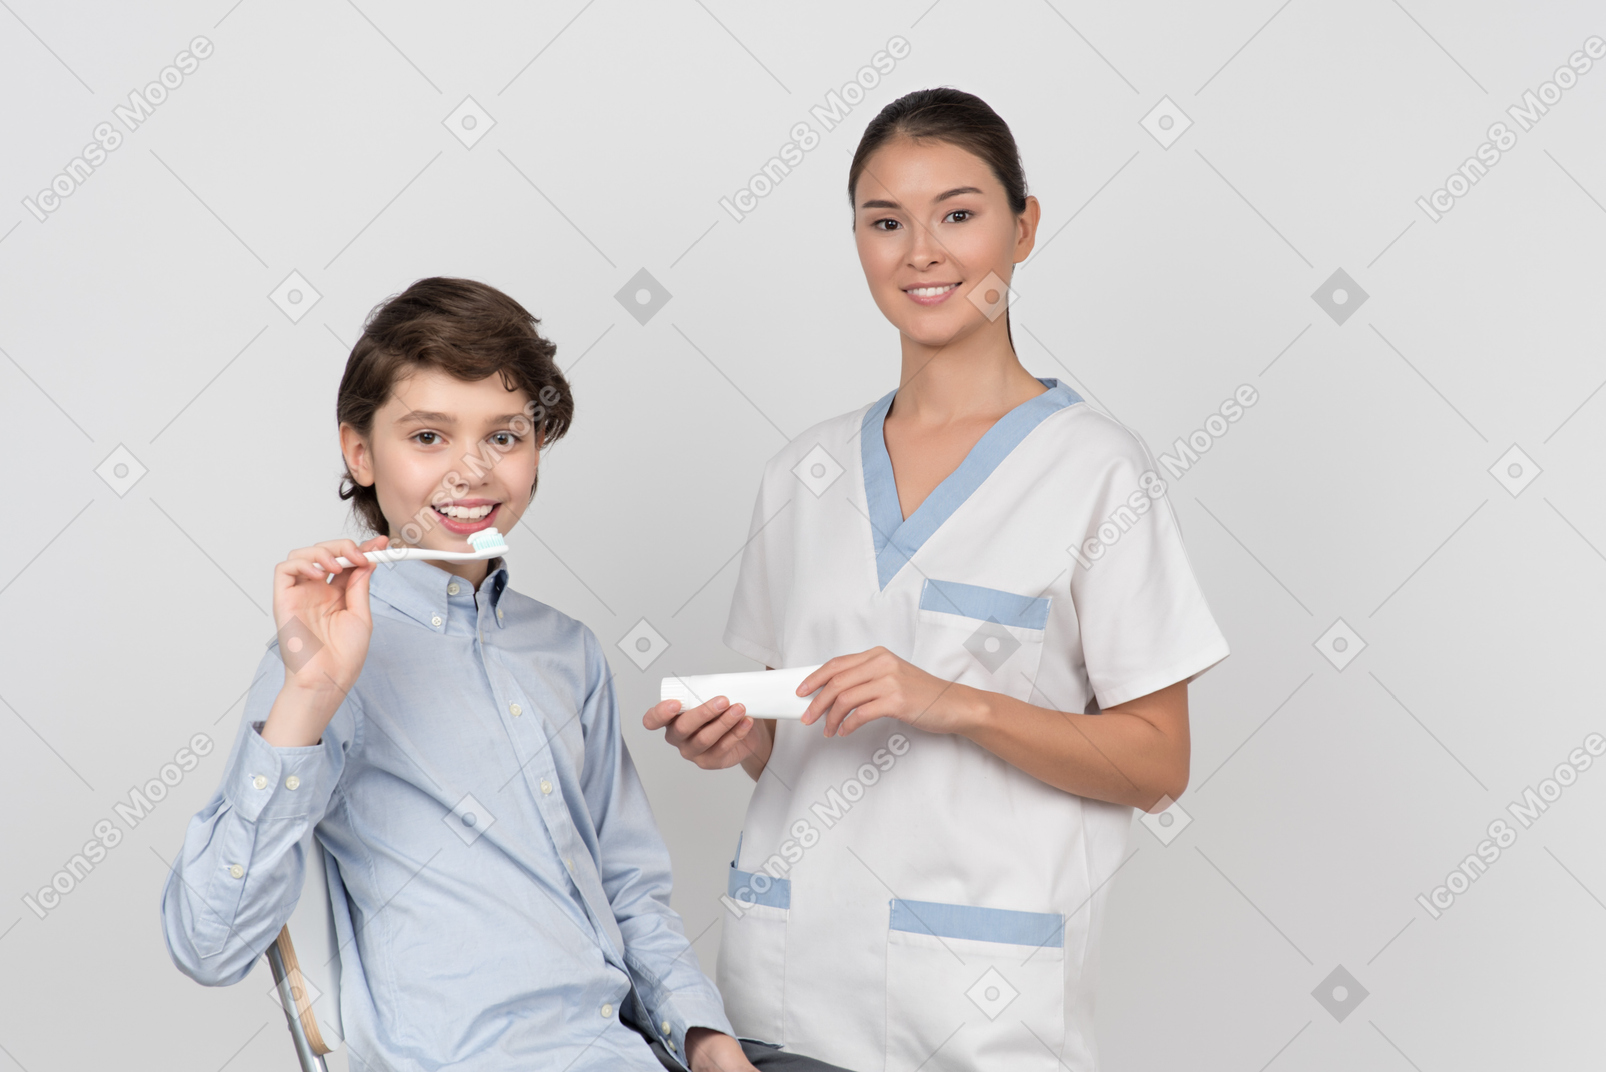 아이 소년 환자 들고 칫솔과 치약을 들고 여성 치과 의사